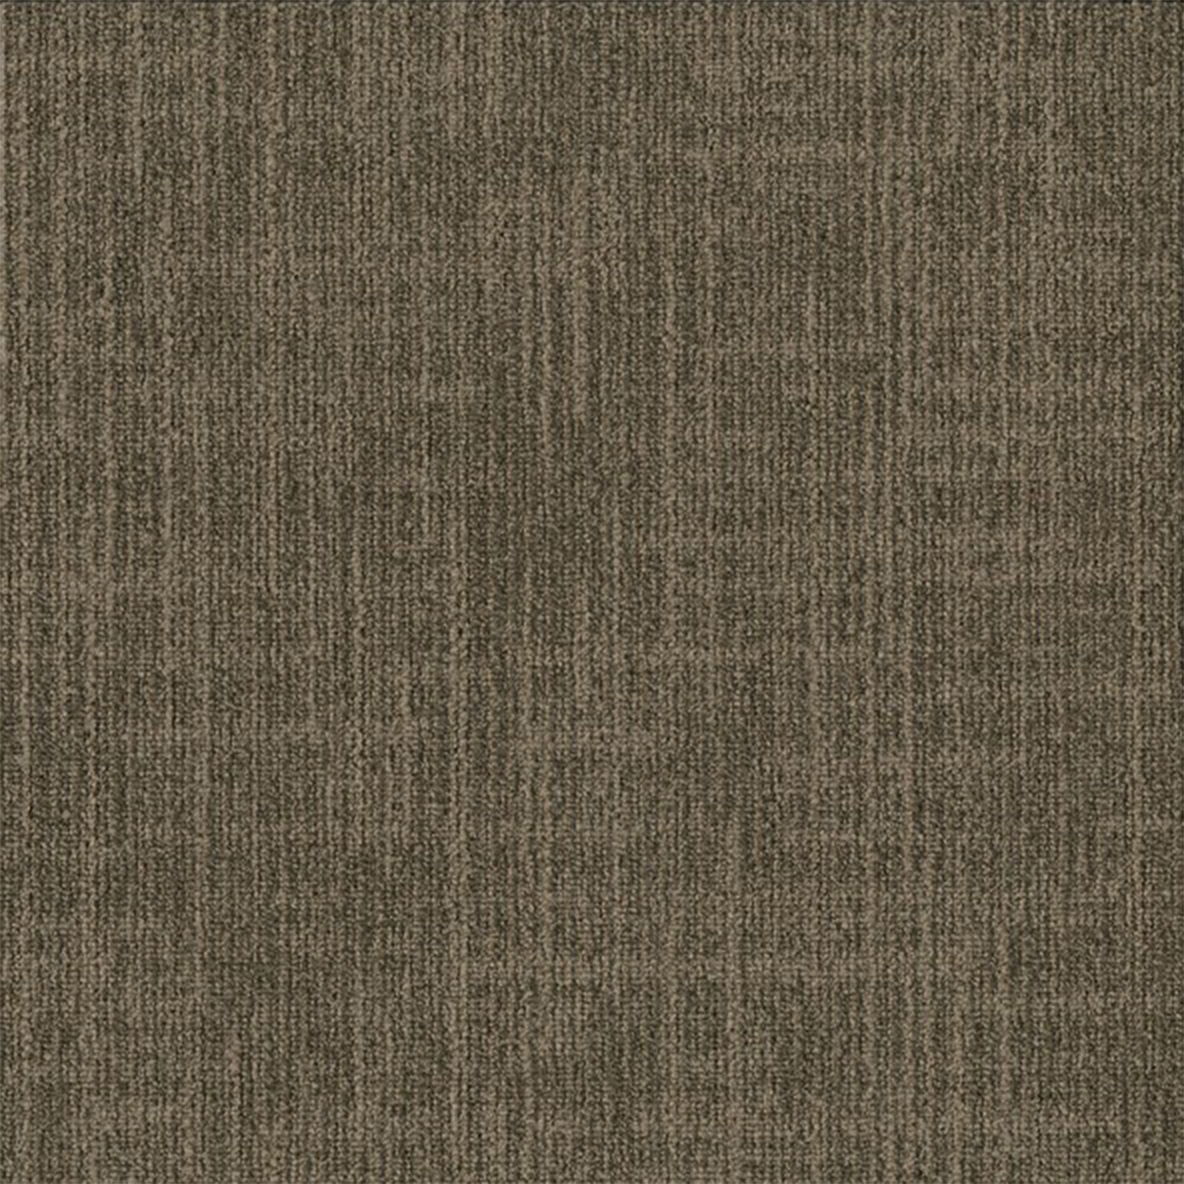 Suede color close up Outer Banks Commercial Carpet Tile .32 Inch x 50x50 cm per Tile